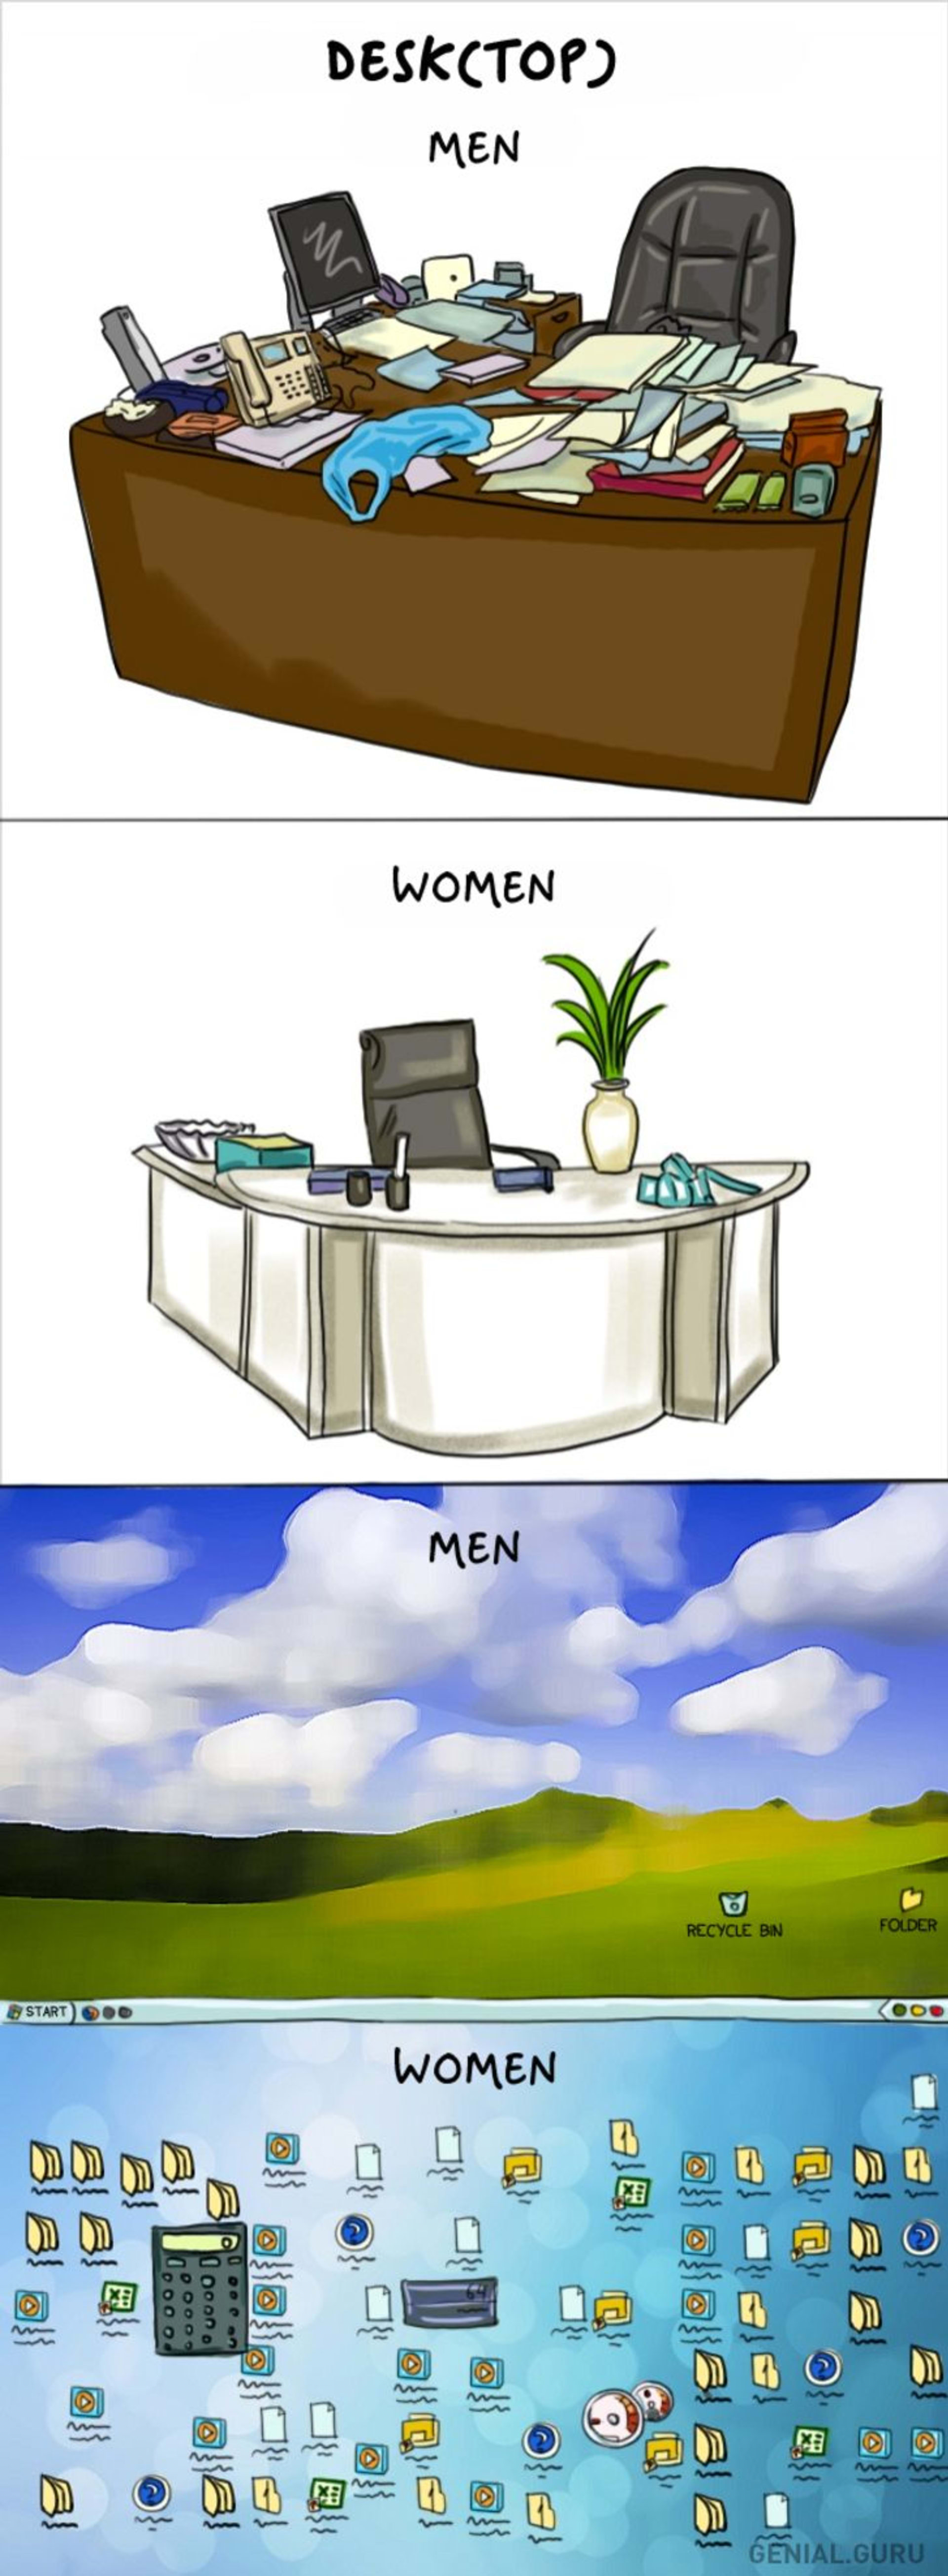 Rozdíly mezi mužem a ženou 2